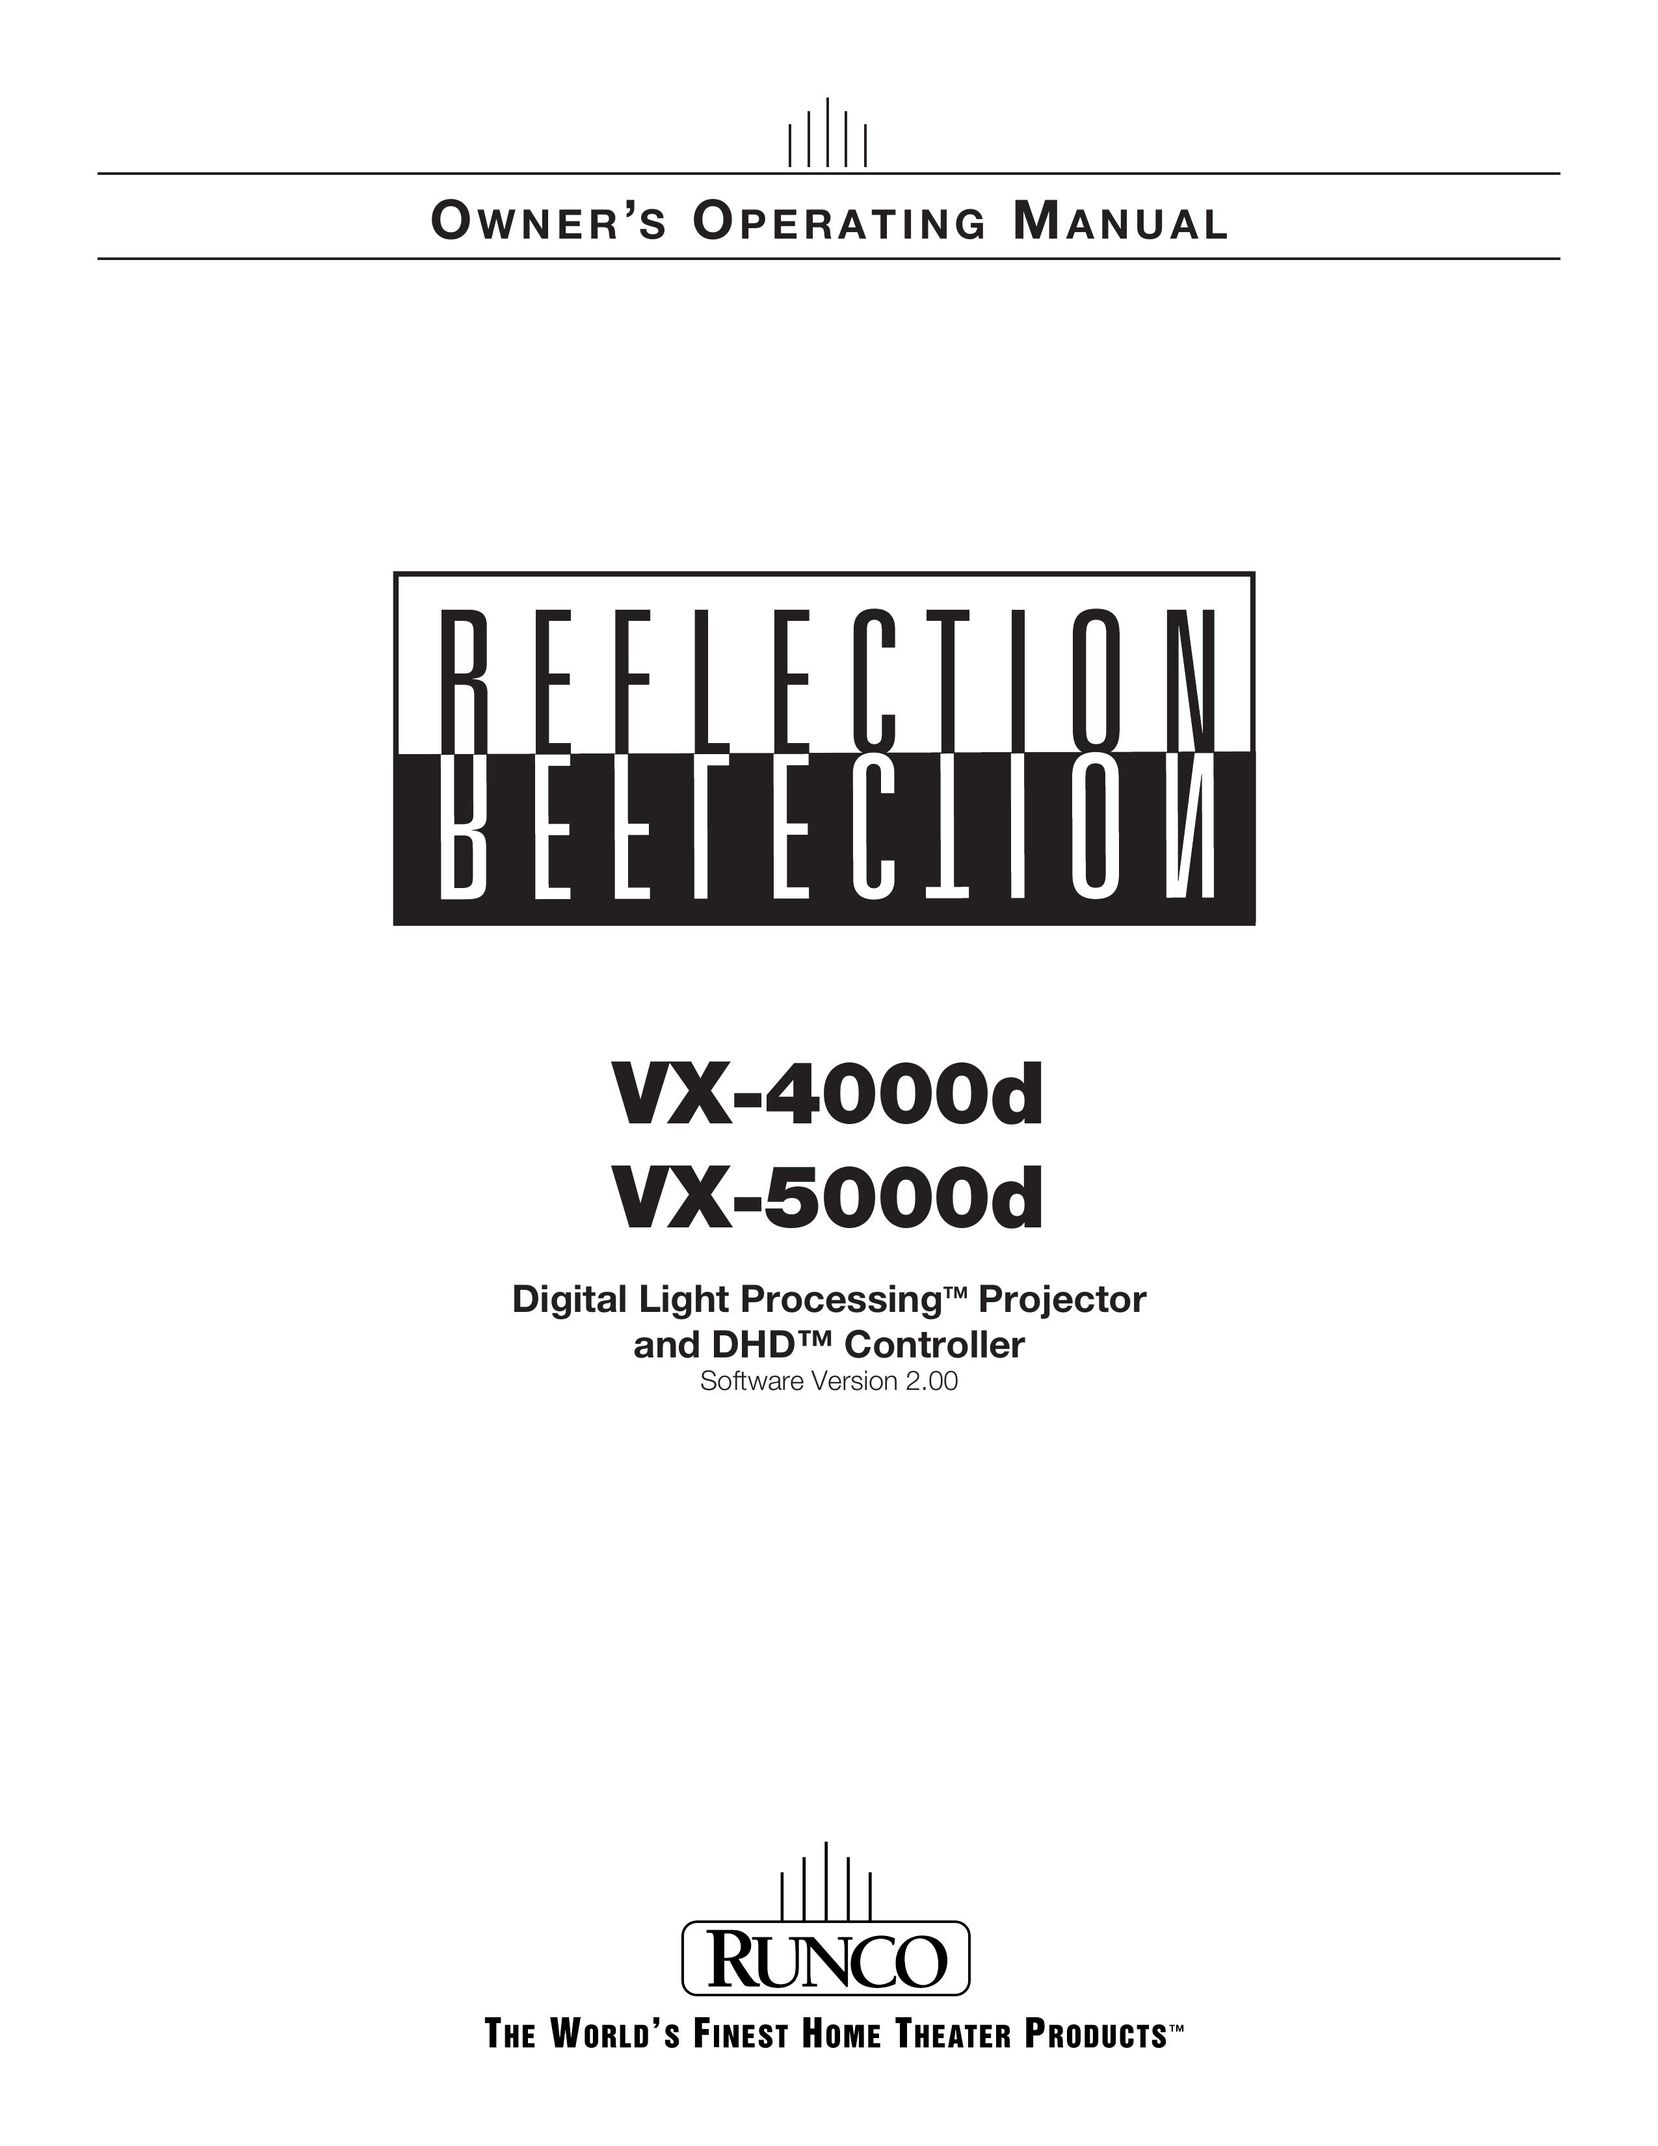 Runco VX-4000d Projector User Manual